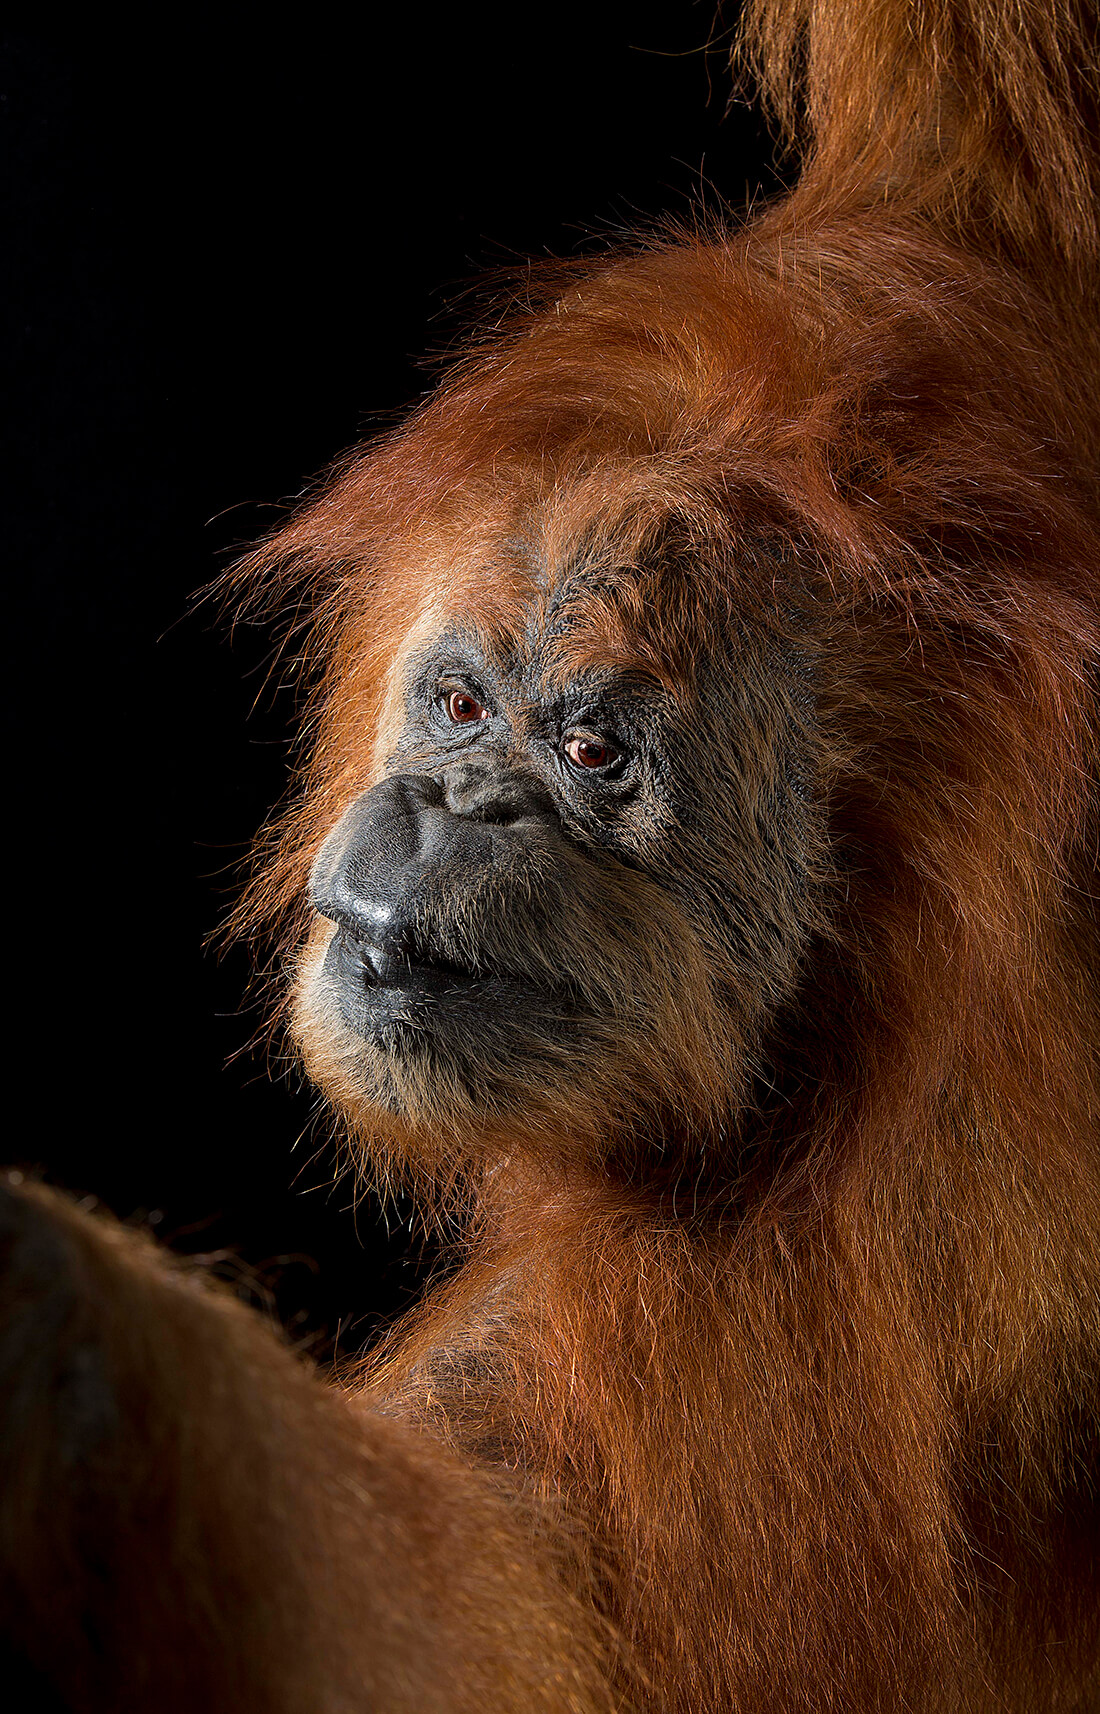 Sumatra-orangutang © National Museums Scotland